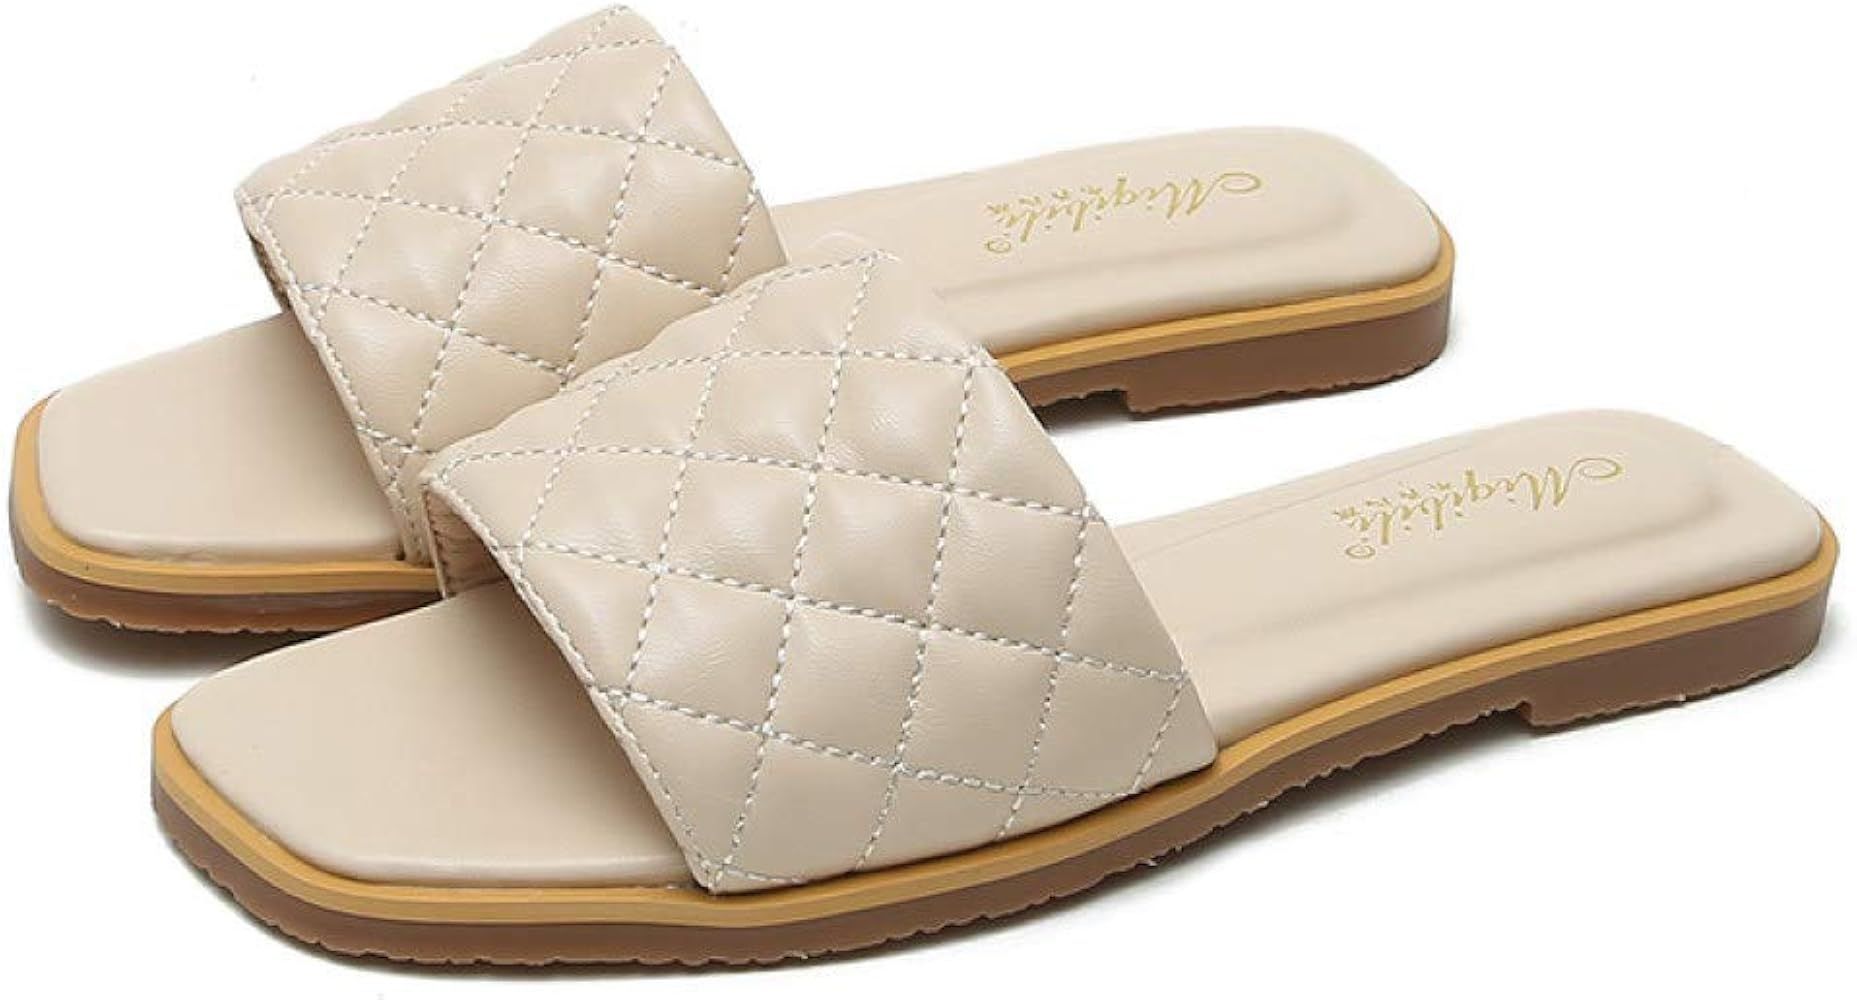 GoldnetDE Women's Quilted Slip-on Slide Sandals Summer Open Toe Single Band Non-Slip Flat Slipper... | Amazon (US)